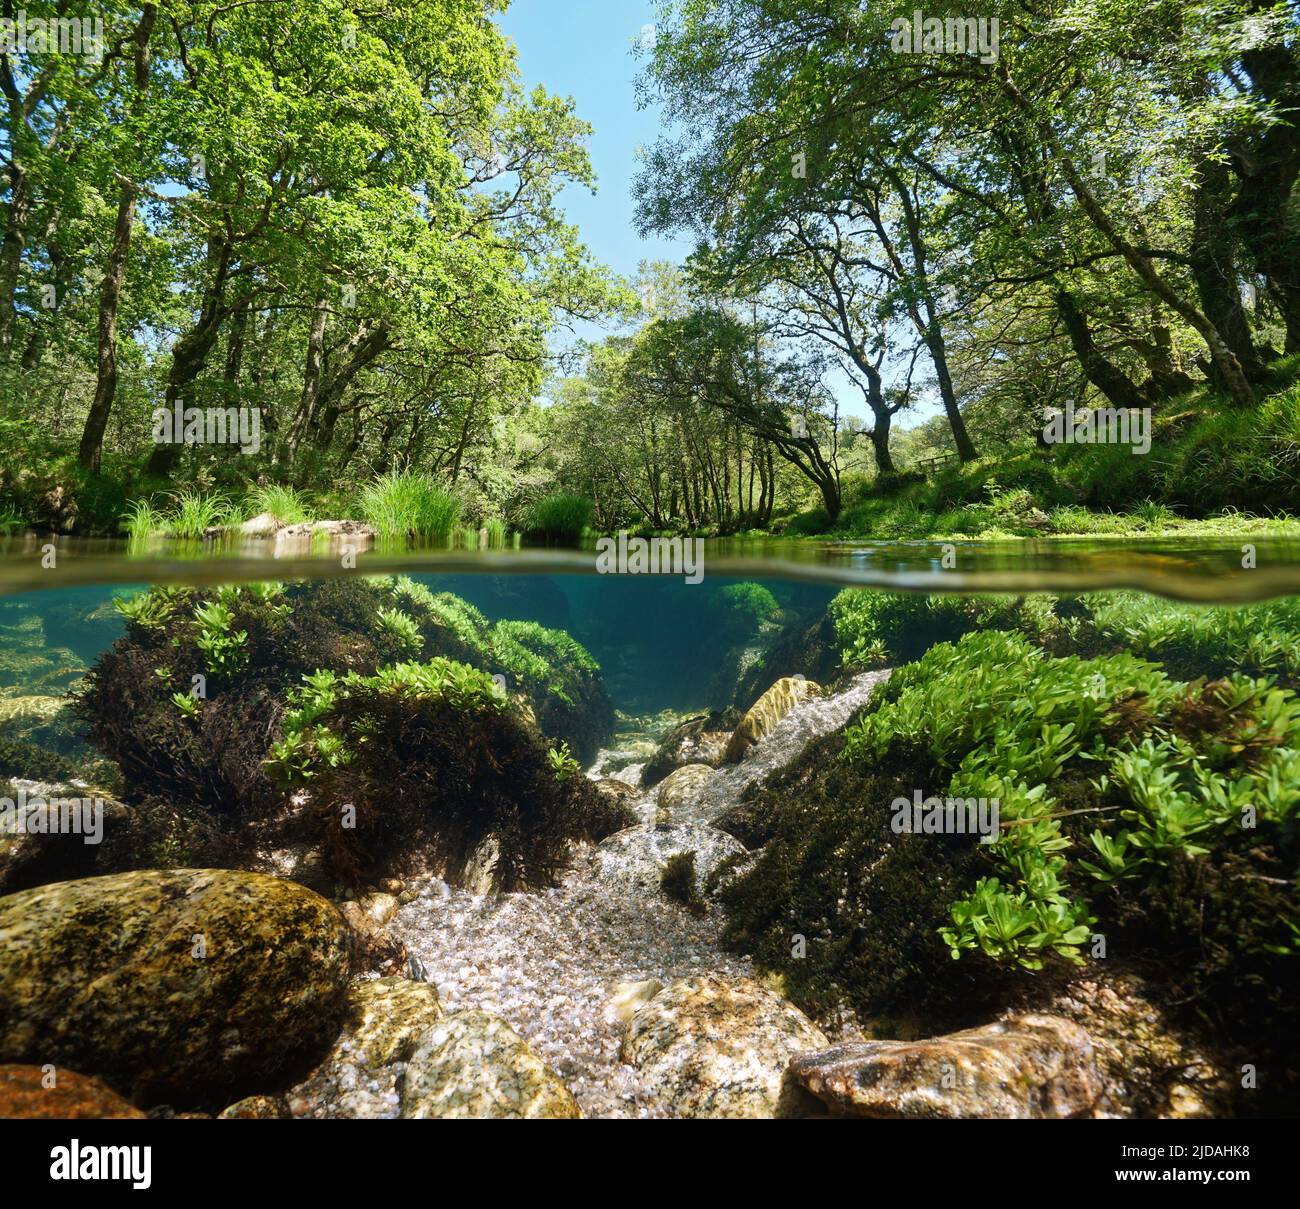 Rivière avec végétation verte, vue sur et sous la surface de l'eau, Espagne, Galice, province de Pontevedra, Rio Verdugo Banque D'Images